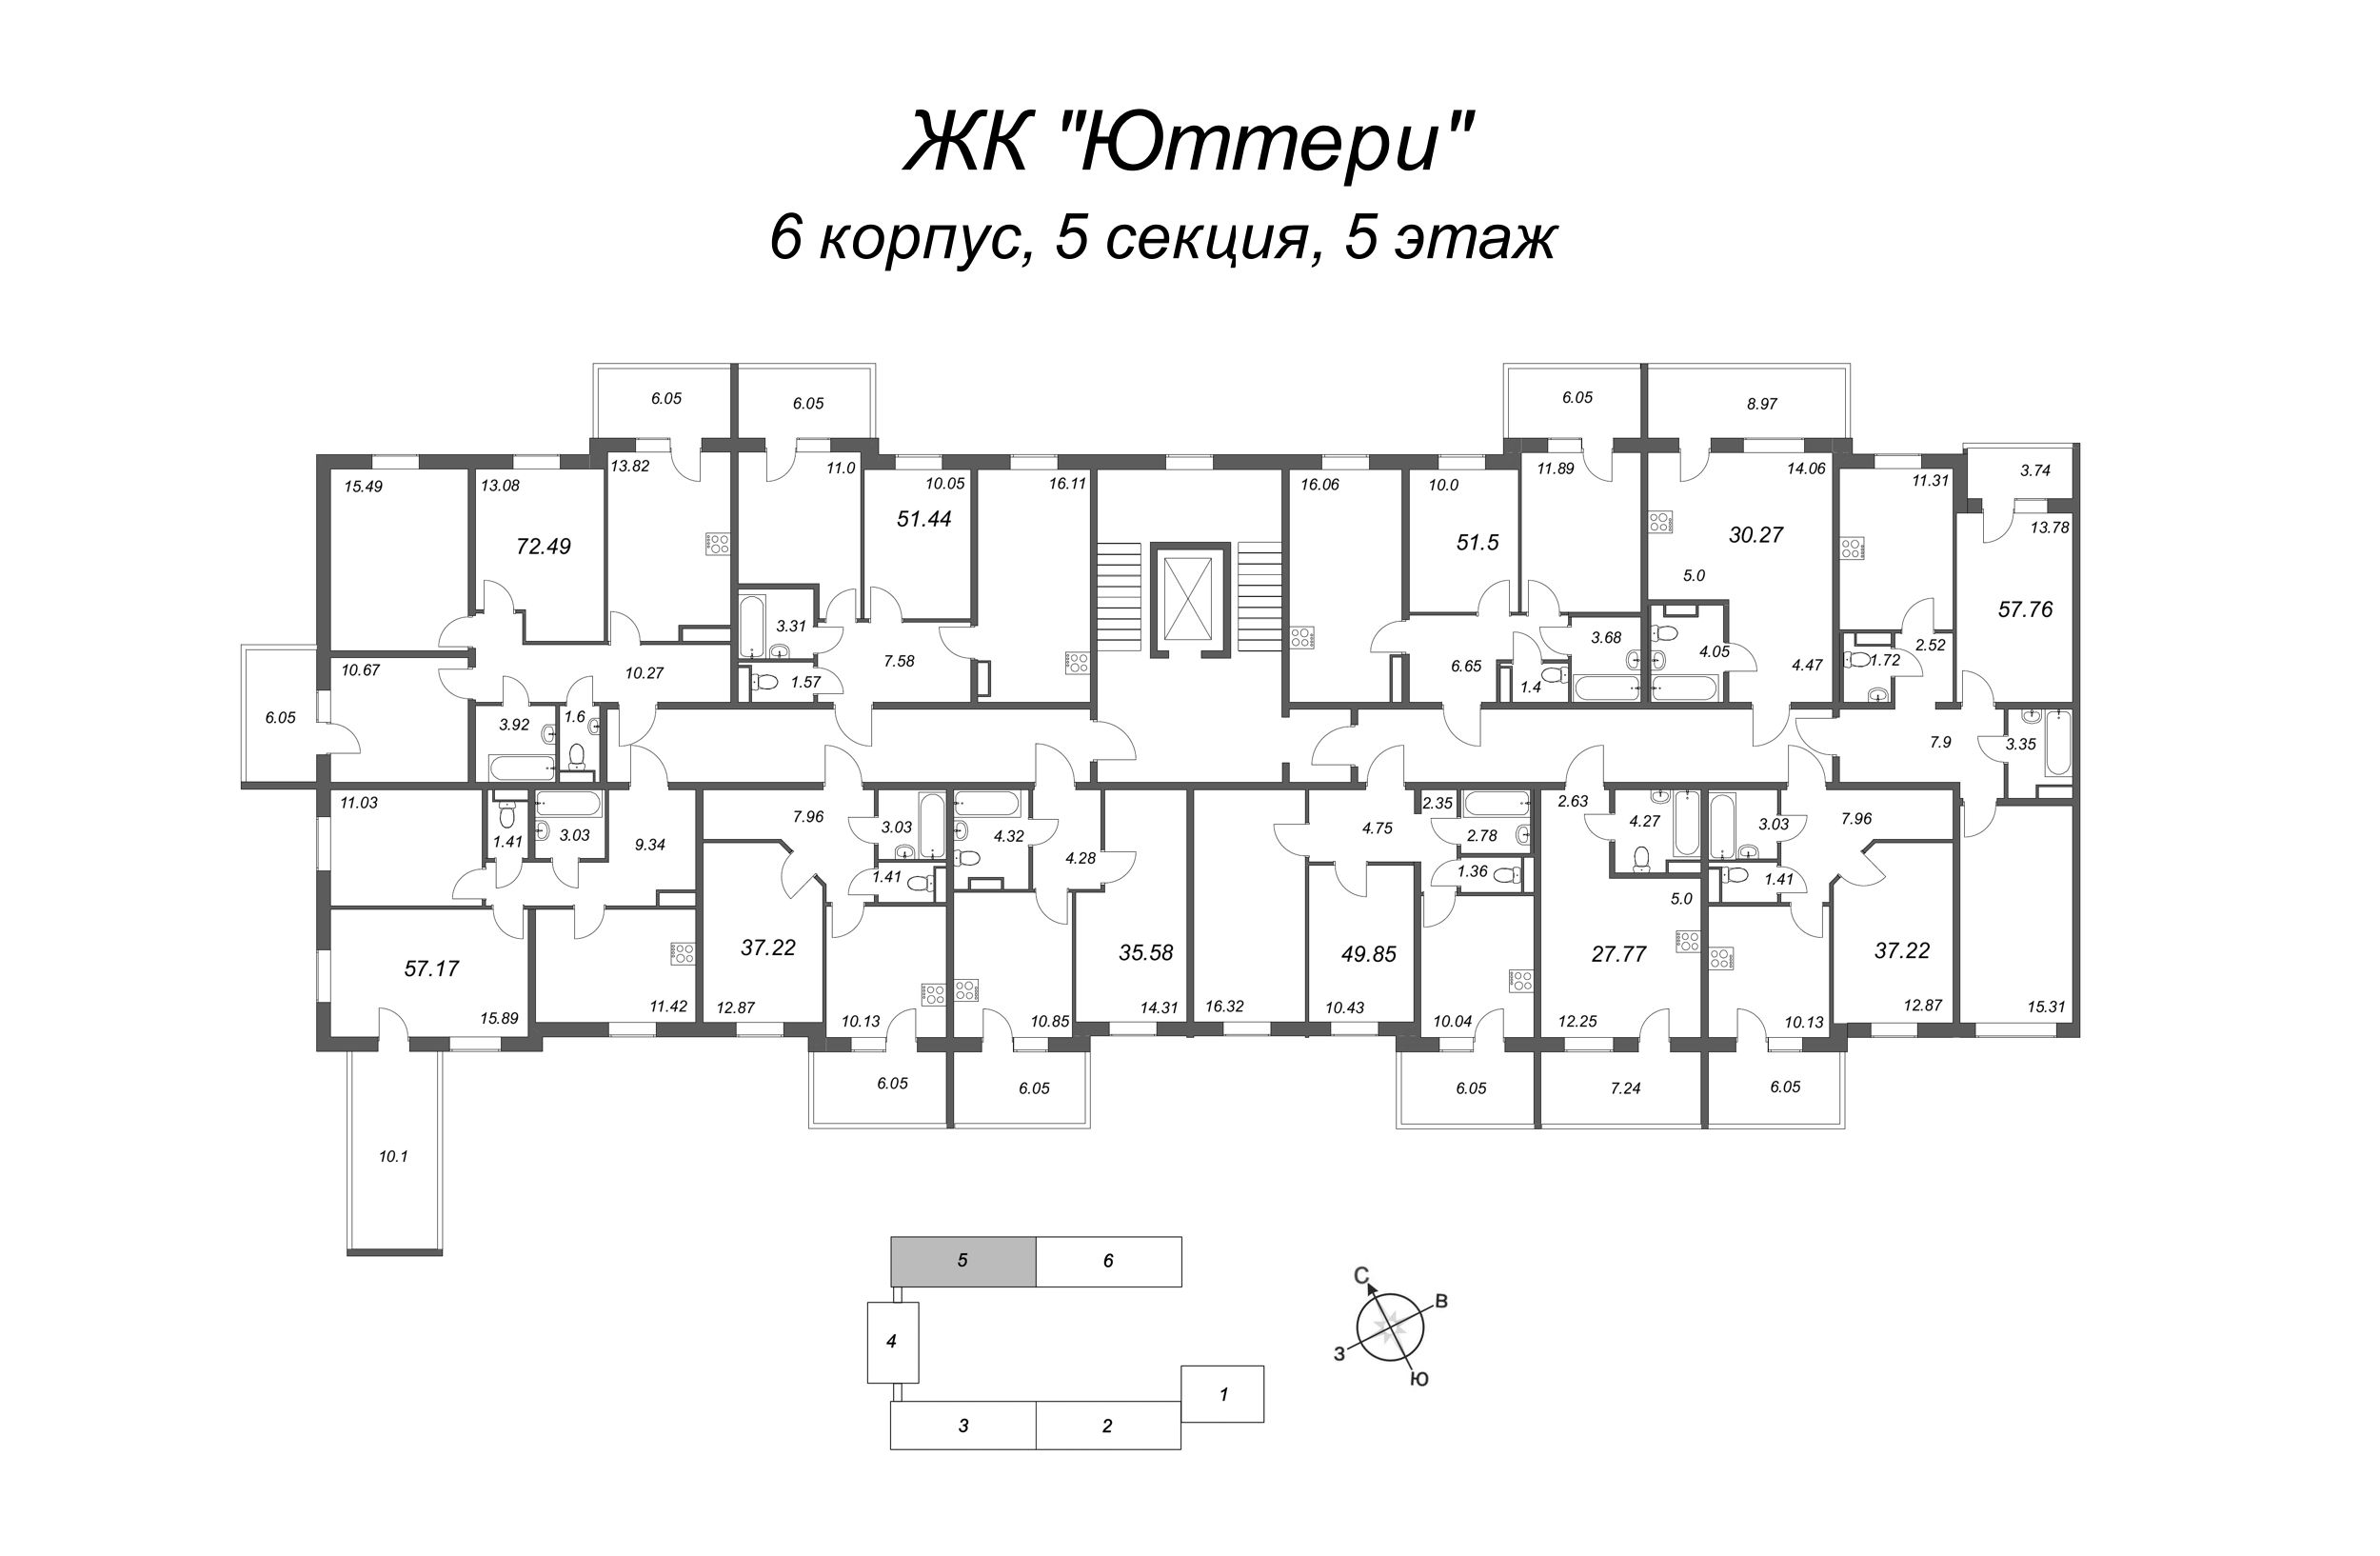 Квартира-студия, 24.15 м² в ЖК "Юттери" - планировка этажа